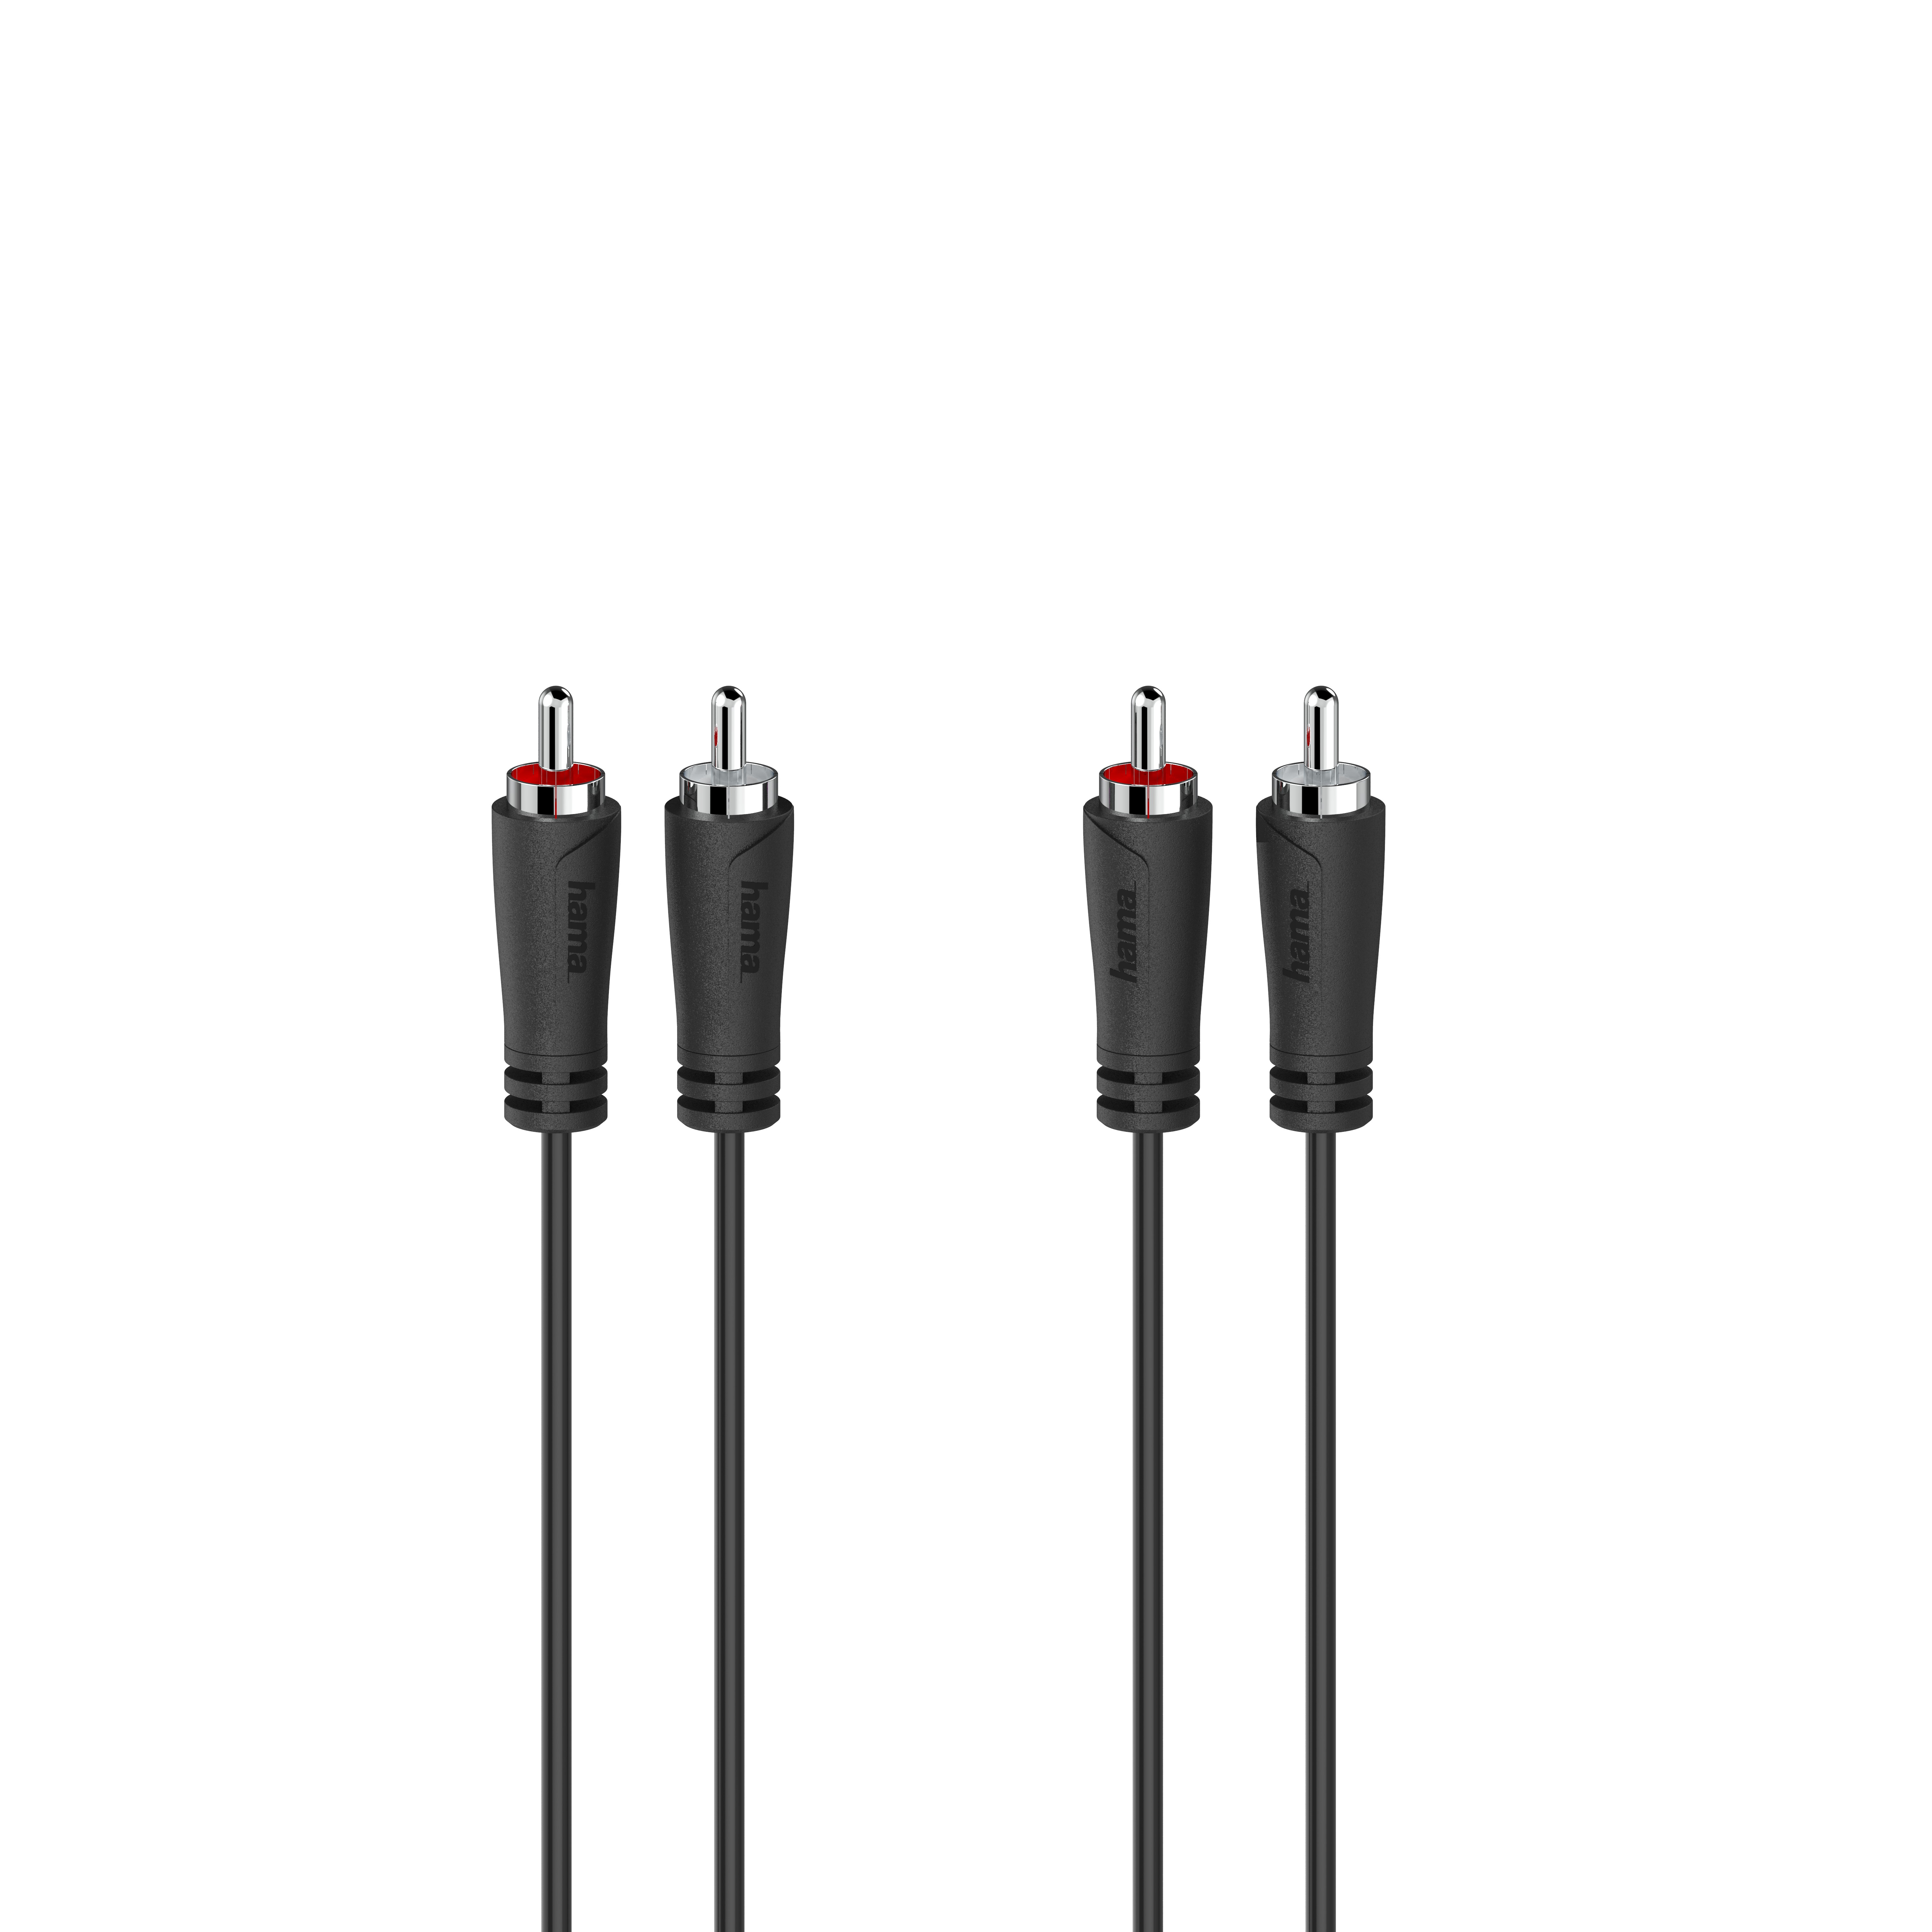 Hama Audio-Kabel, 2 Cinch-Stecker, 1,5M